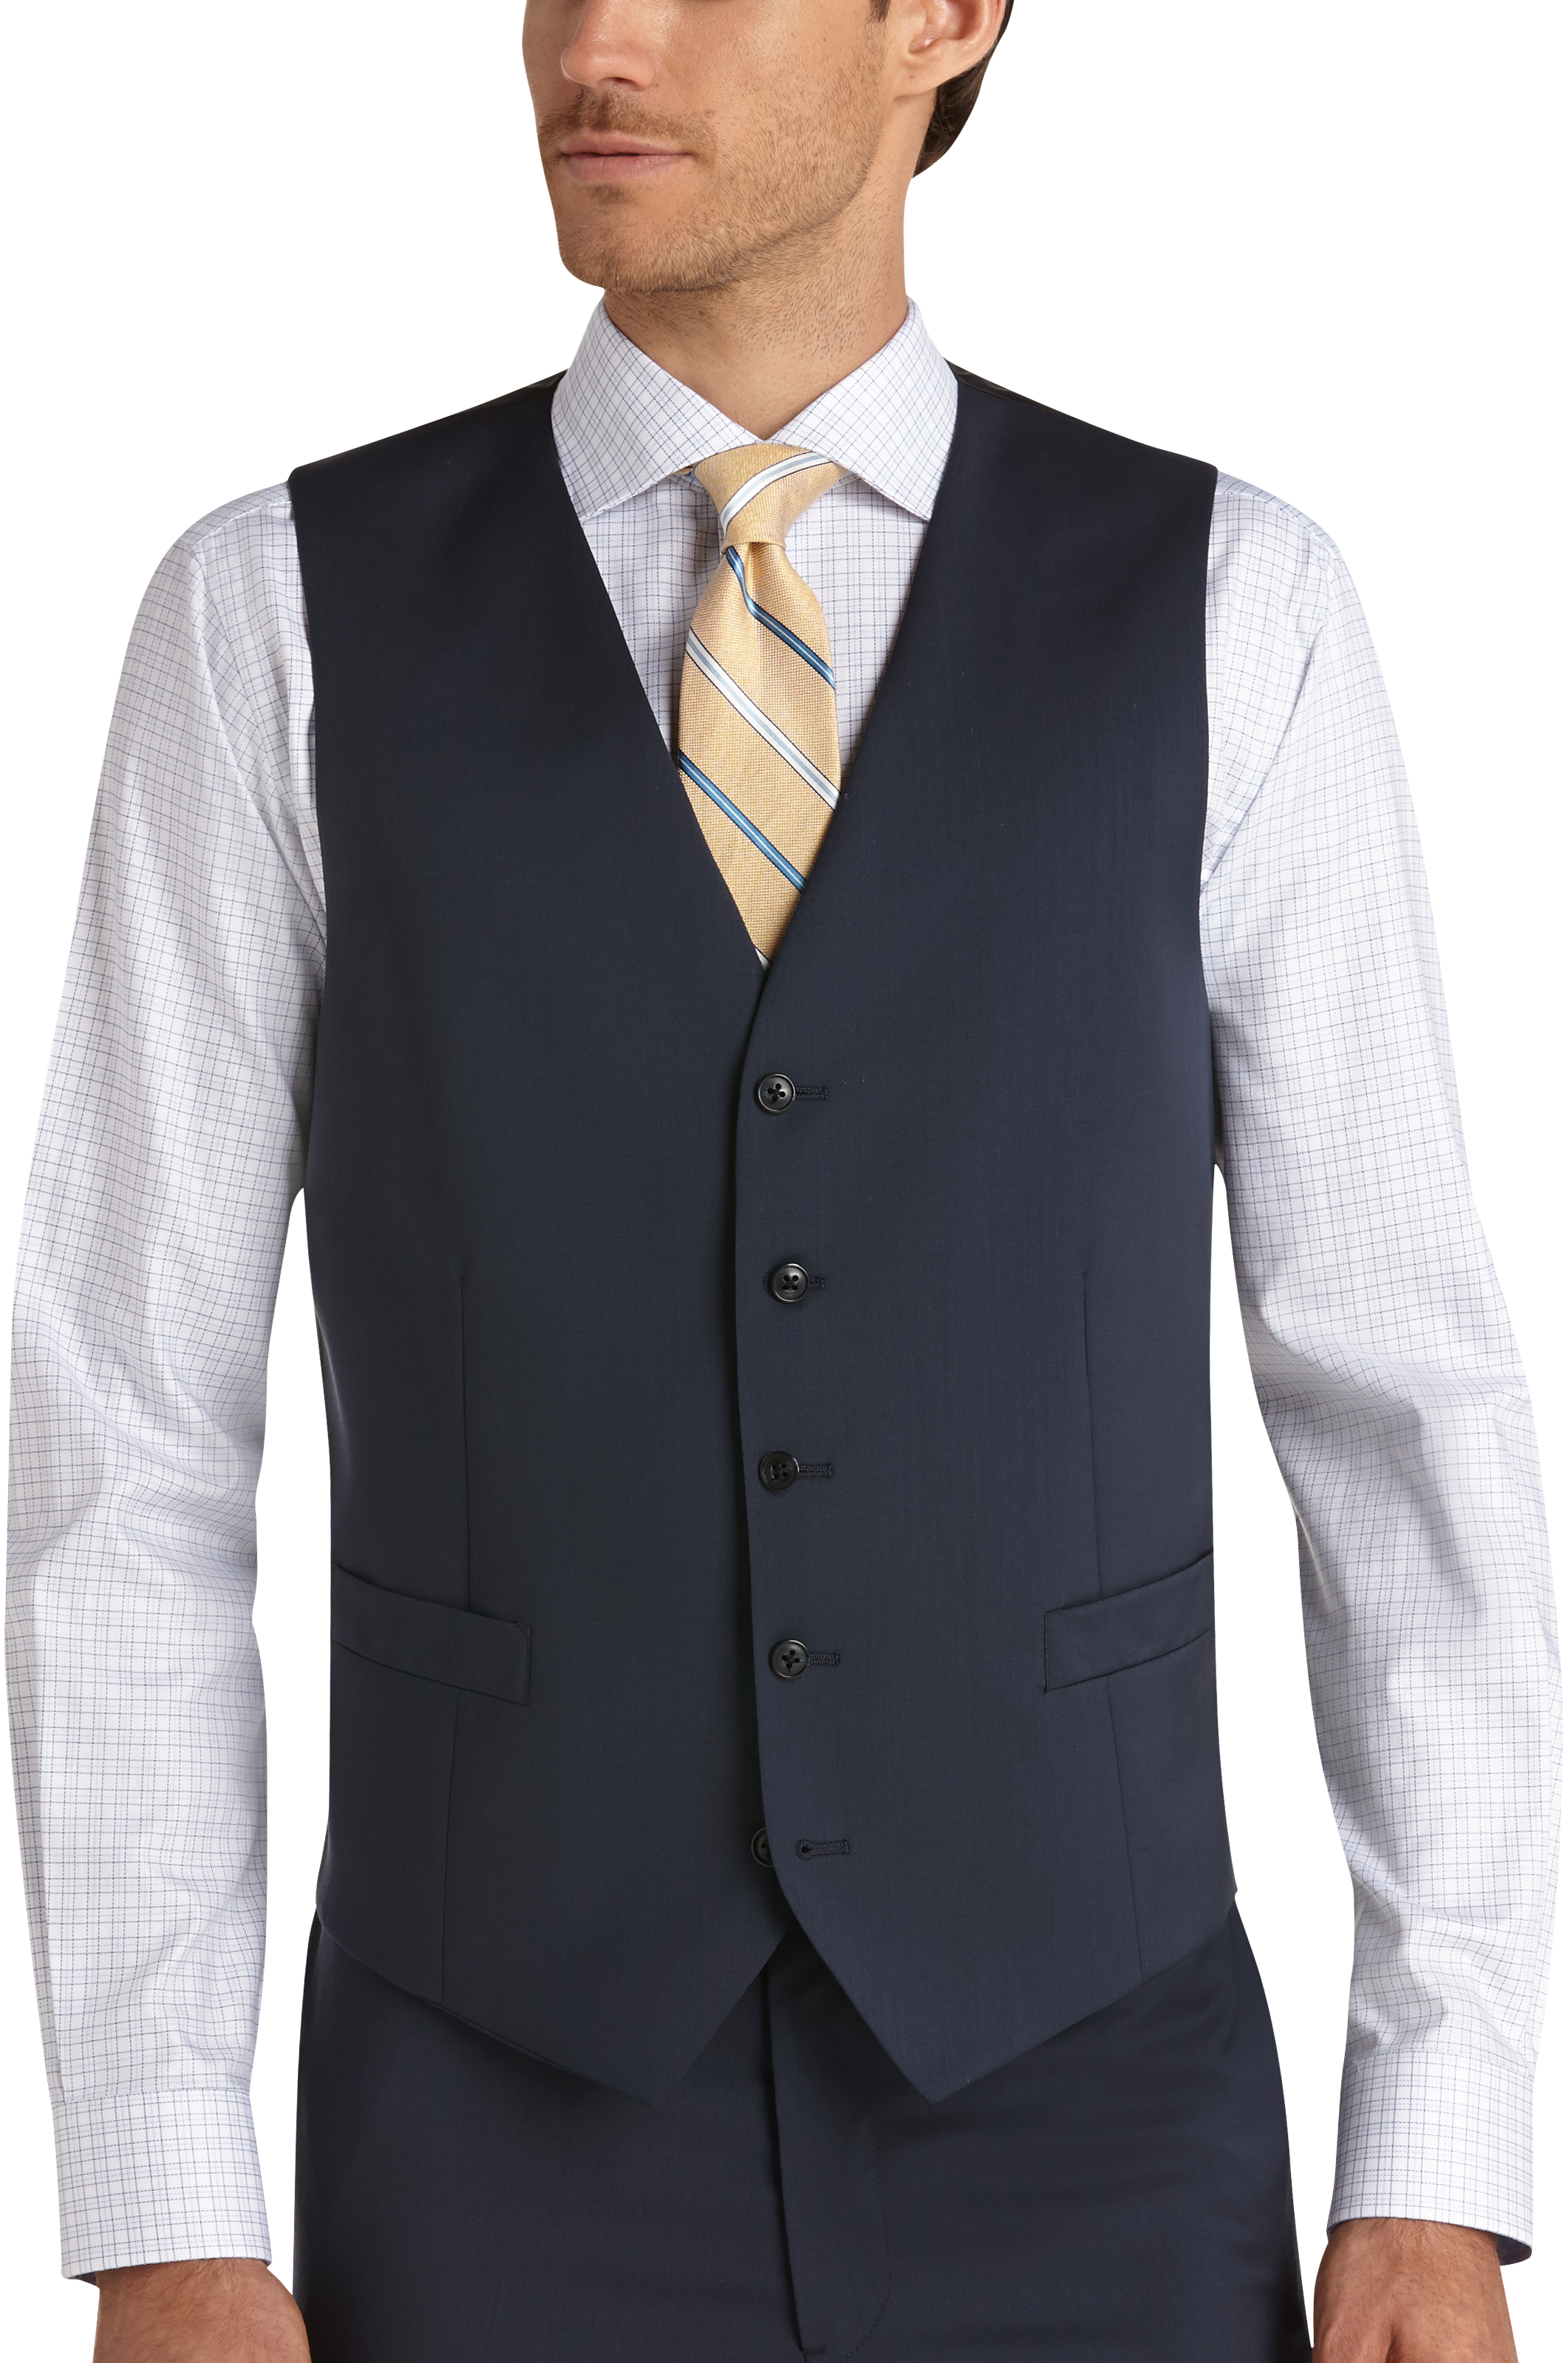 Joseph Abboud Blue Modern Fit Suit Separates Vest - Men's Suit Separate ...